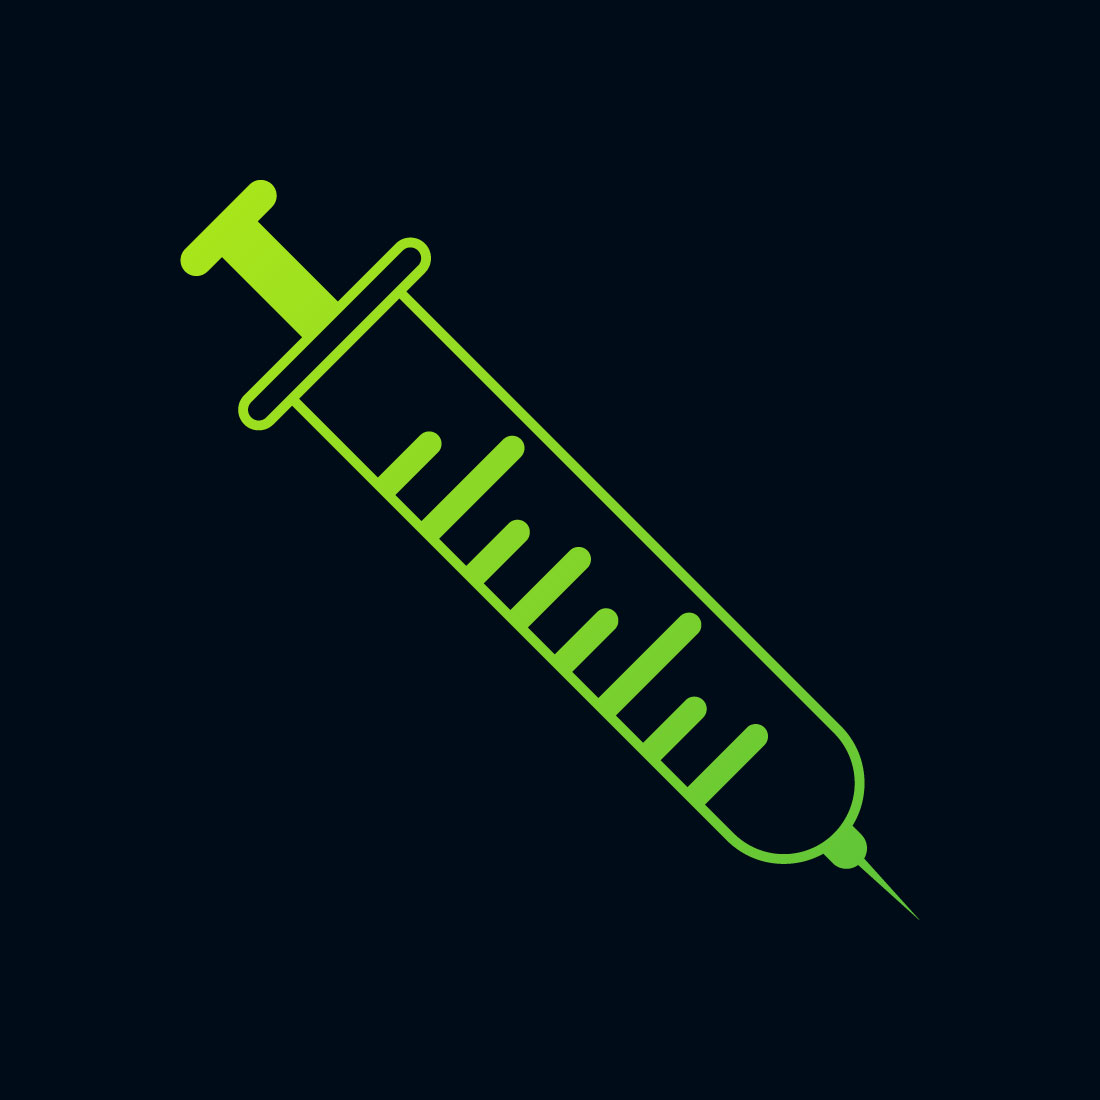 Medical Syringe Injection Logo design Concept, Vector illustration preview image.